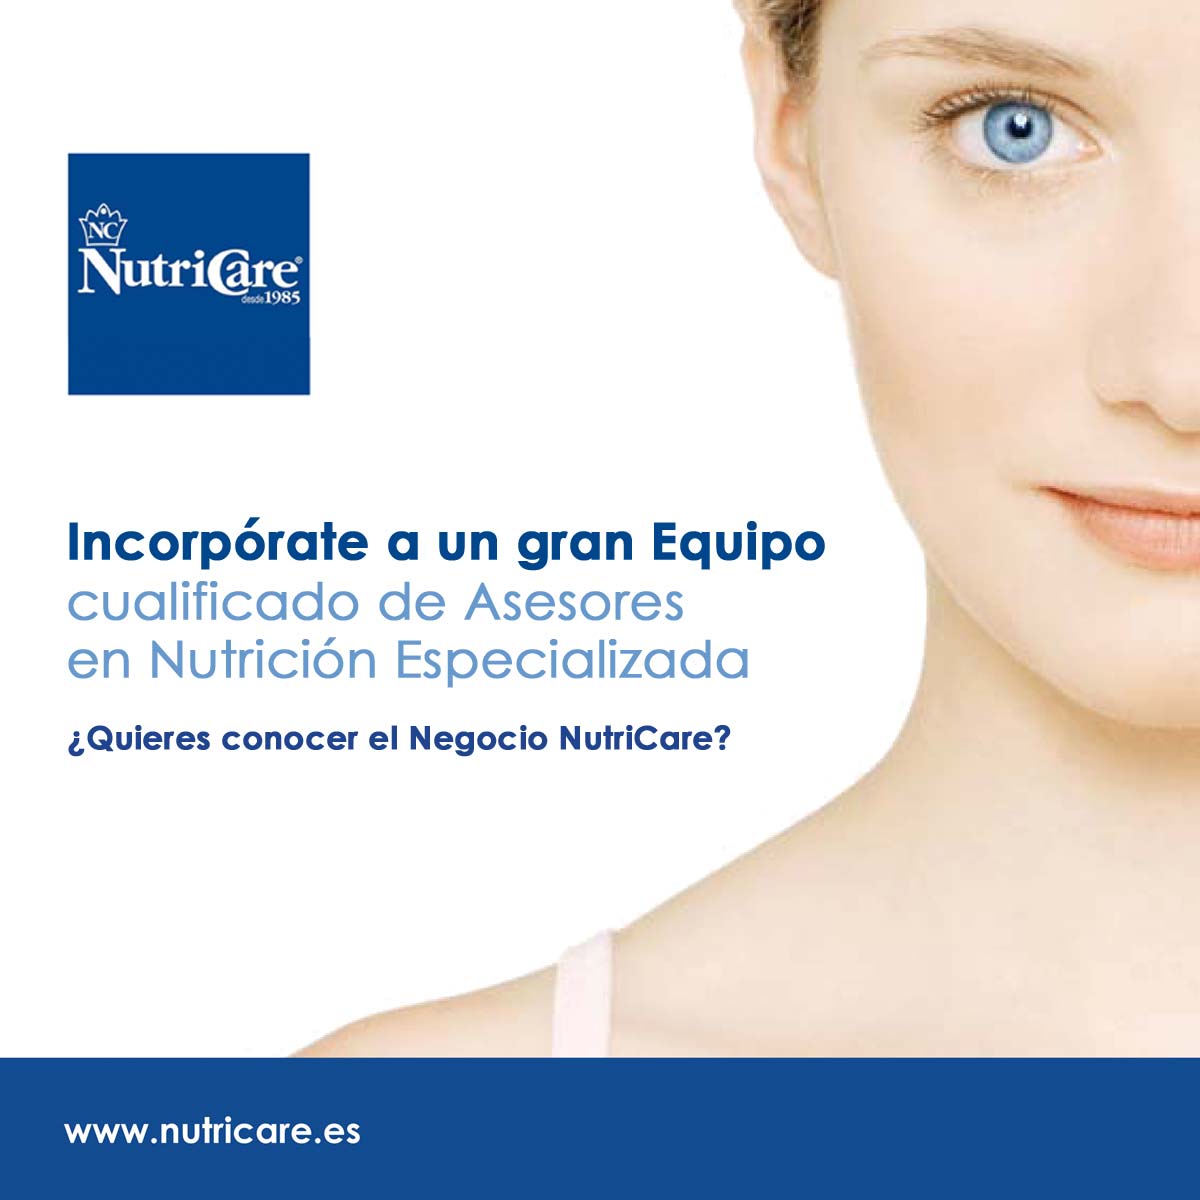 Incorporate a un gran Equipo
cualificado de Asesores
en Nutricion Especializada

¢ Quieres conocer el Negocio NutriCare?

www.nutricare.es